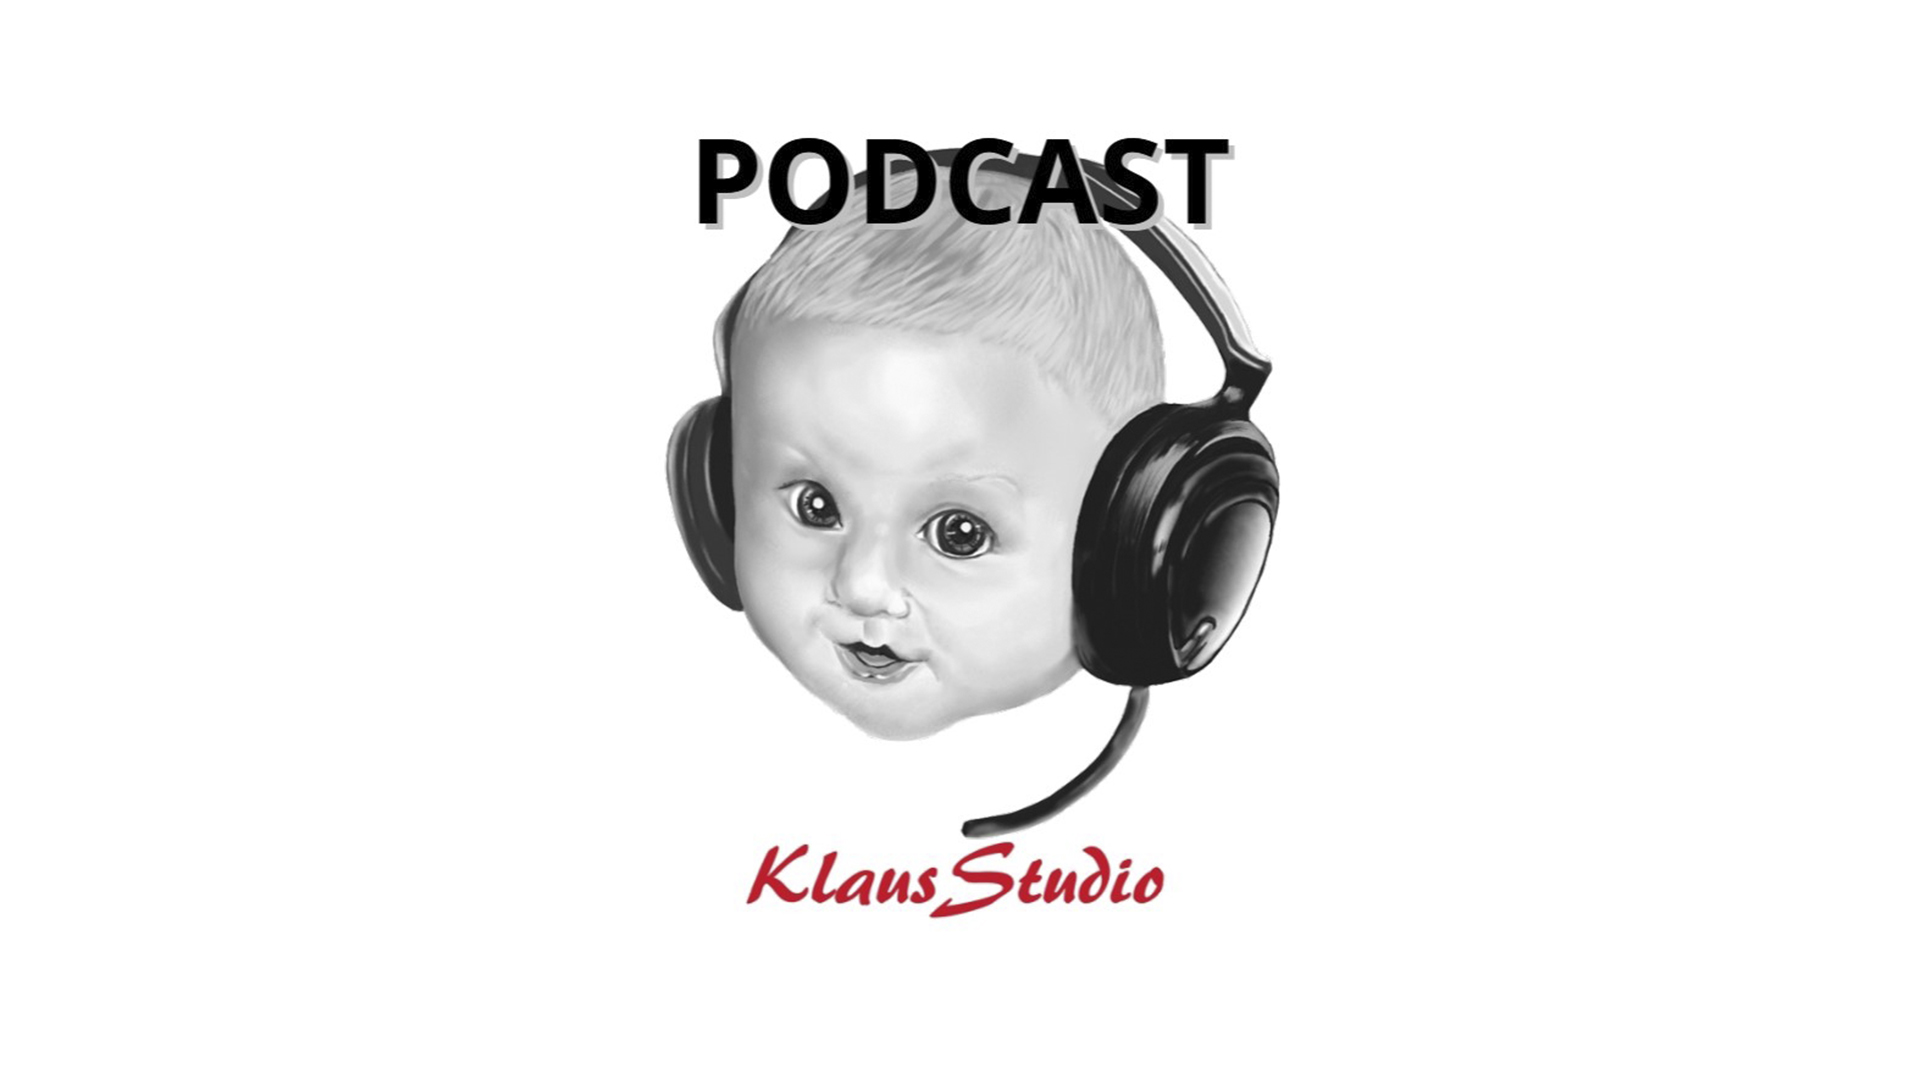 KlausStudio - Podcast: Wireless Frank.N.Stein, Band aus Solingen